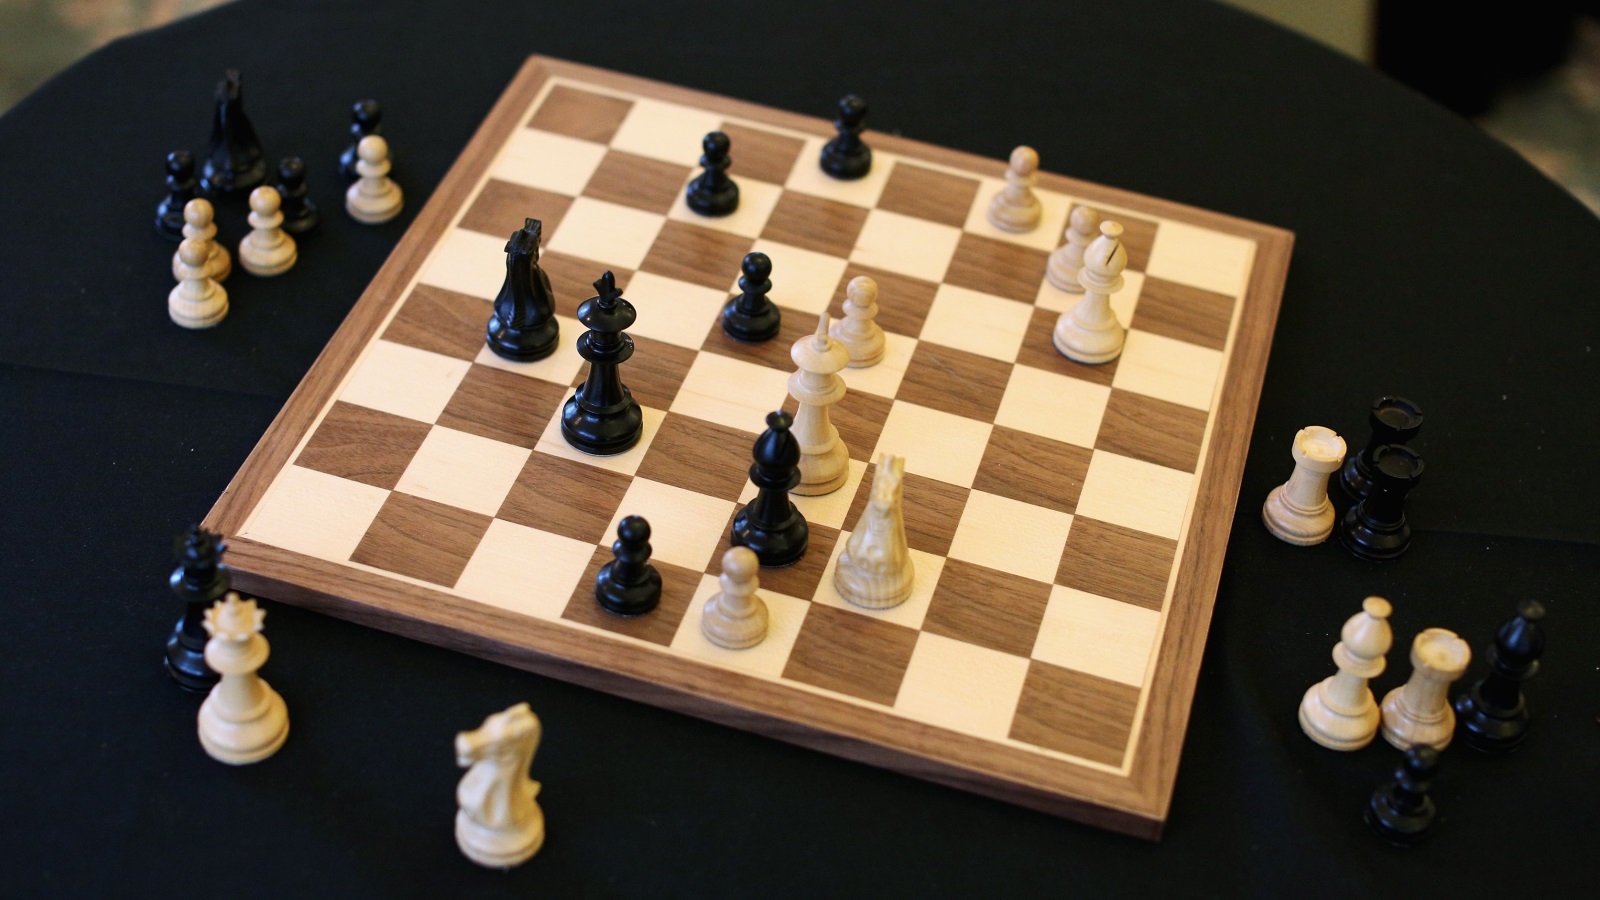 ممارسة لعبة الشطرنج جعلت من اللاعب صانع قرار أفضل، لا أن مهاراته في صنع القرار هي ما جعل منه لاعب شطرنج جيد